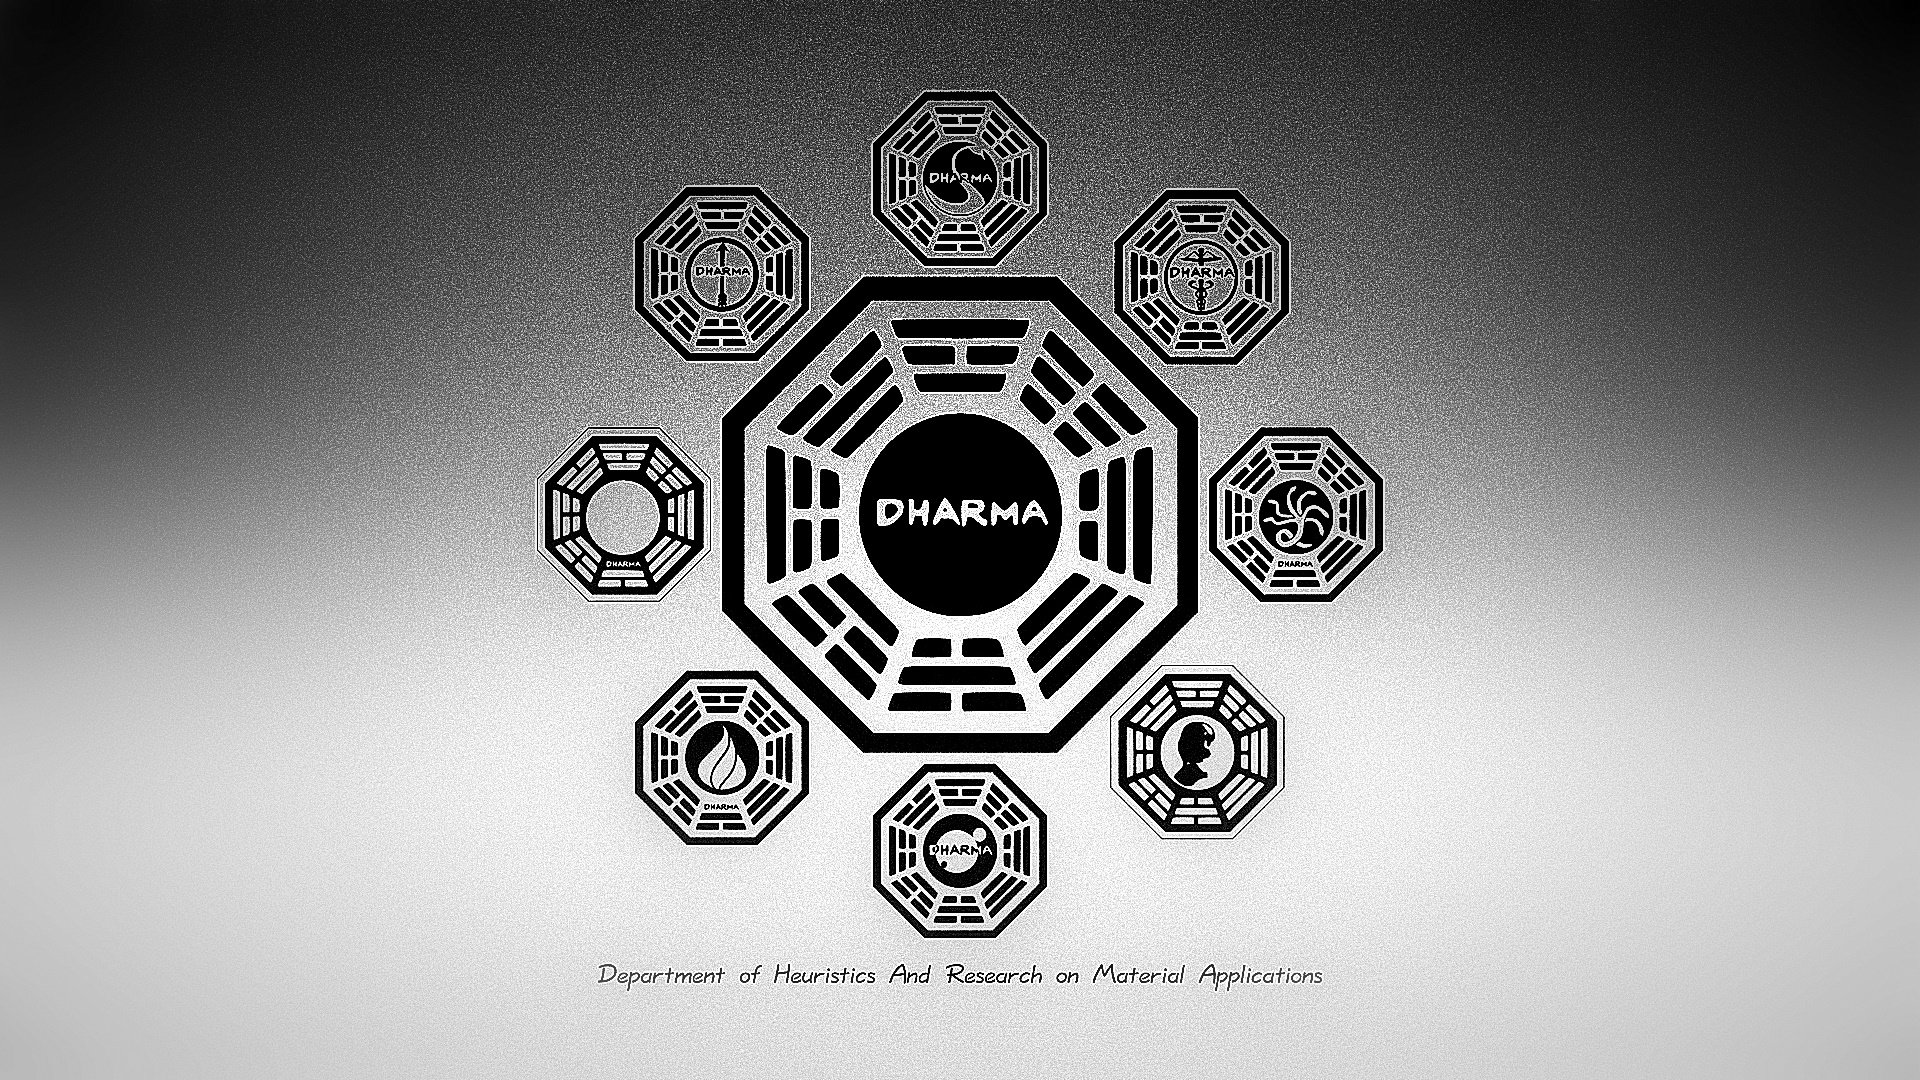 carta da parati del dharma,emblema,font,design,modello,illustrazione